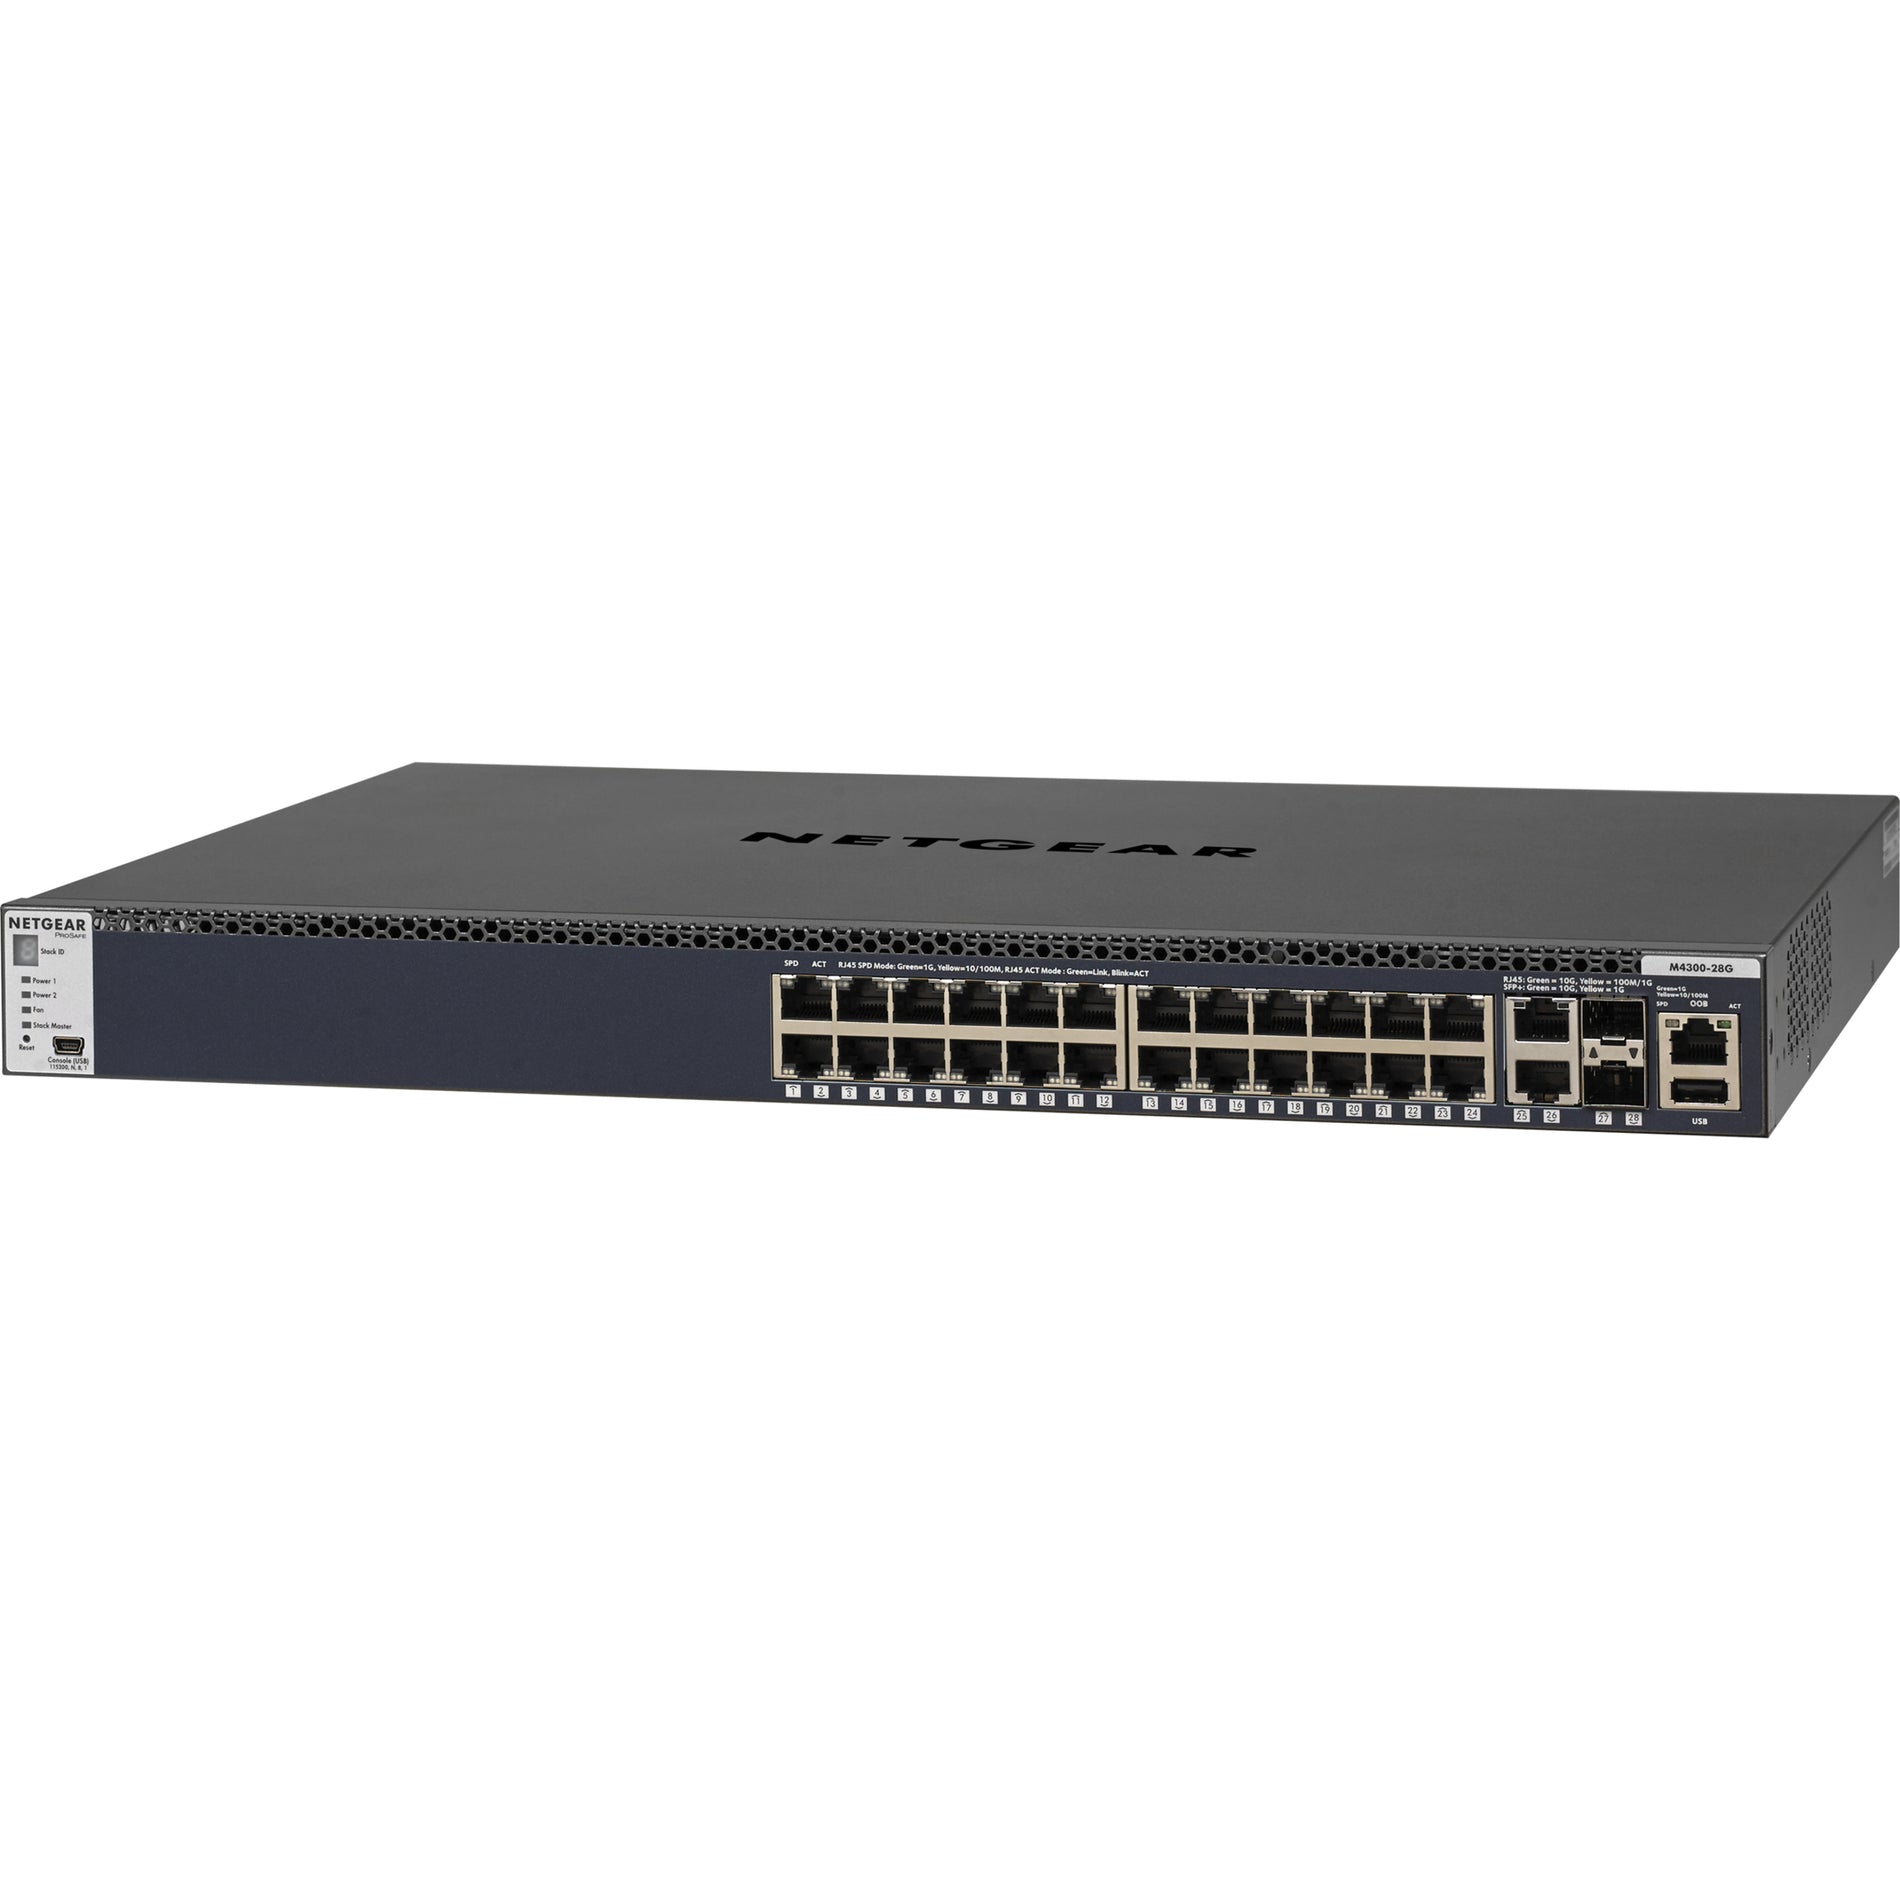 شبكية جي إس إم 4328 أس 100NES - من إم 4300-28 جي بروسيف مدار، 24x1ج ستاكابل، 2x10ق القائمة -تي و 2xSFP+ -، التبديل شامل 3 - الشبكة العلامة التجارية: نيتجير